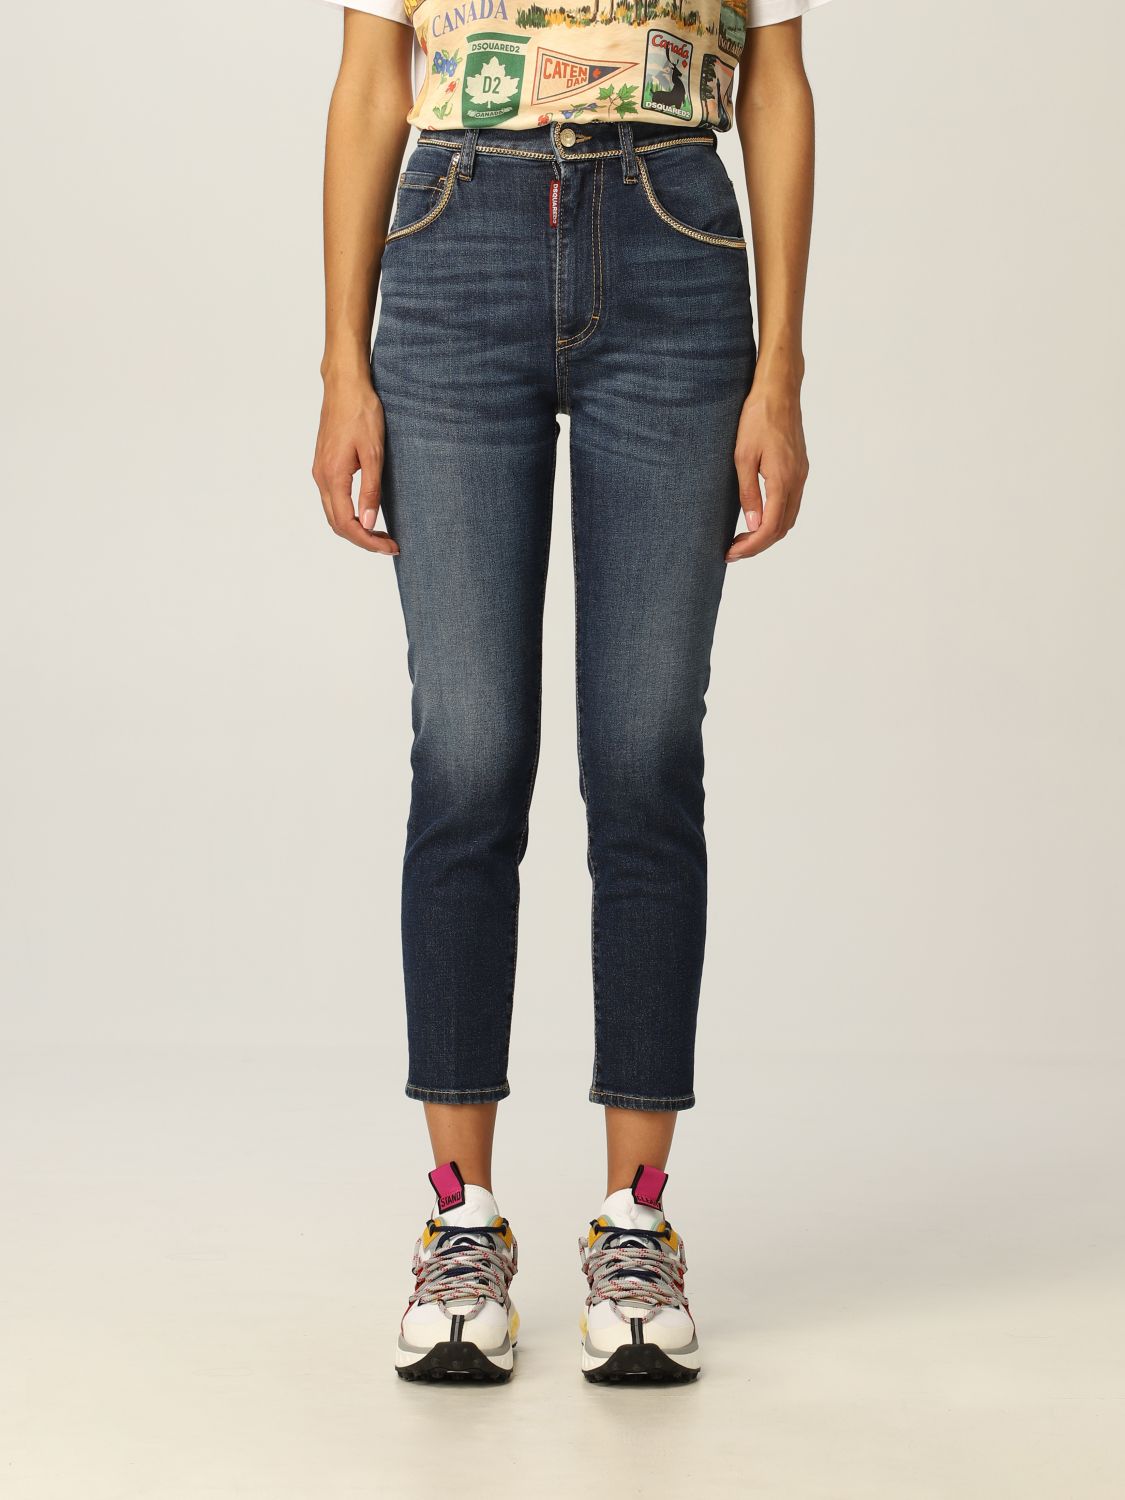 Jeans a vita alta Giglio.com Donna Abbigliamento Pantaloni e jeans Jeans Jeans a vita alta 